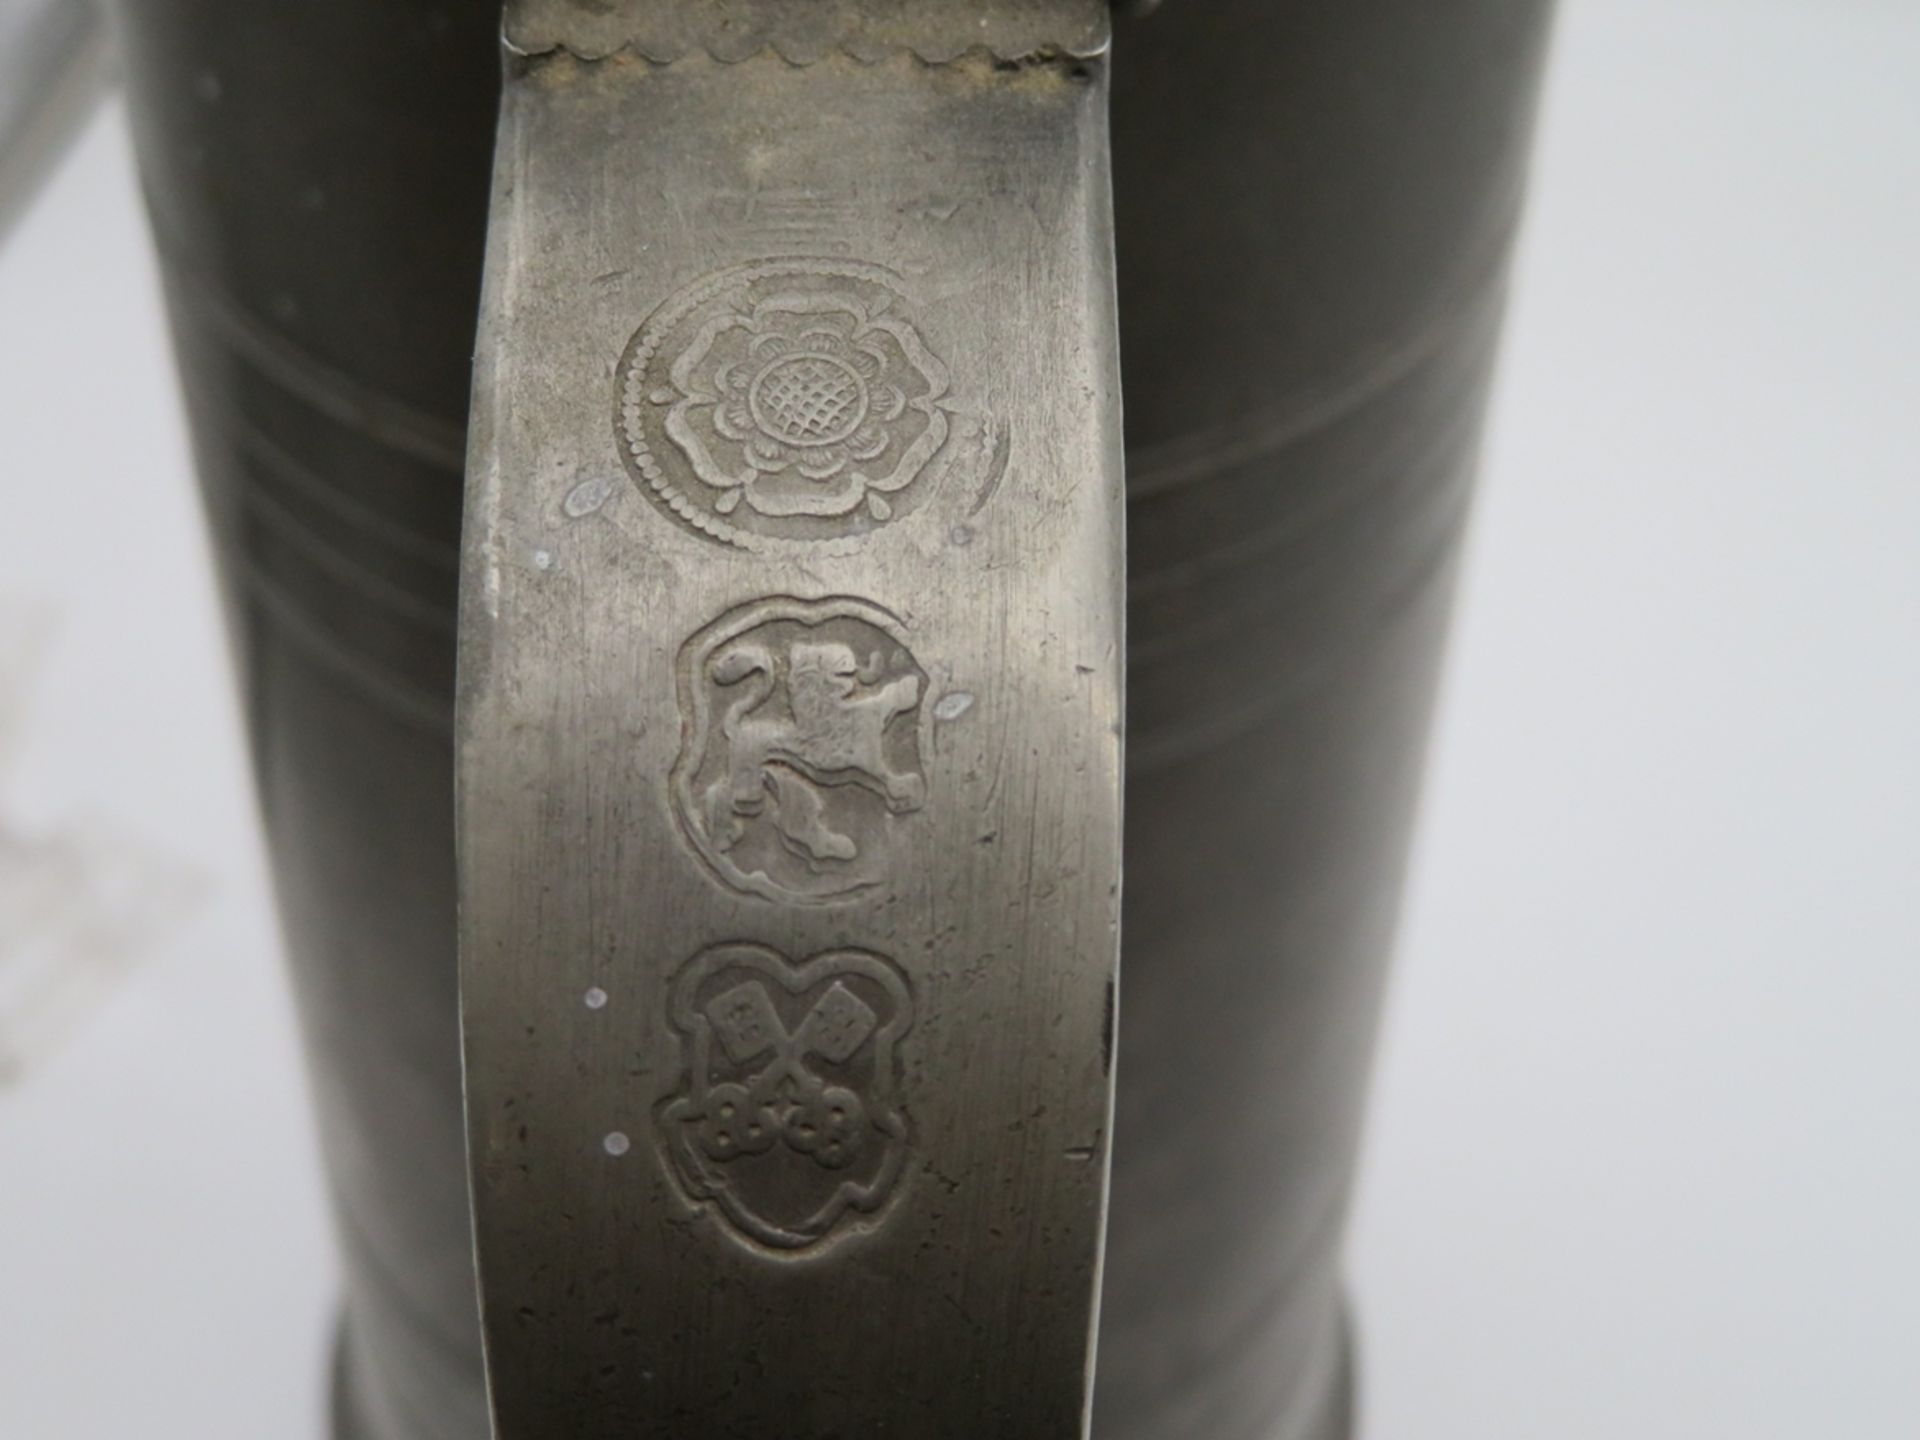 Zunftkrug auf 3 Kugelfüßen, 19. Jahrhundert, Zinn, h 46,5 cm, d 25 cm. - Image 2 of 2